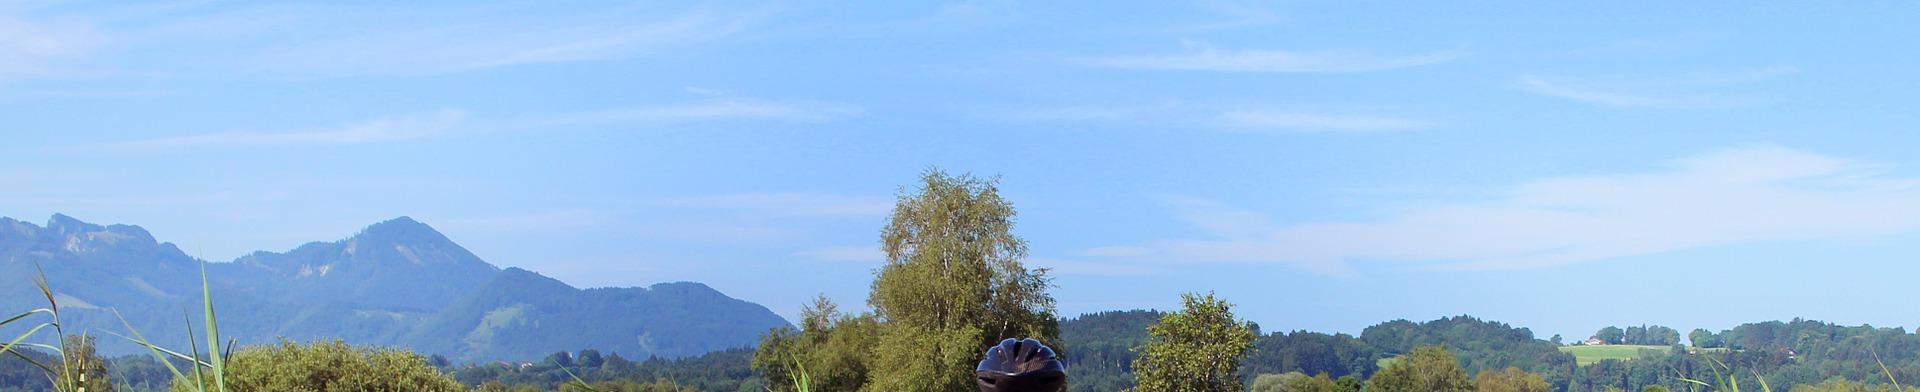 In bicicletta nella Valle d'Itria